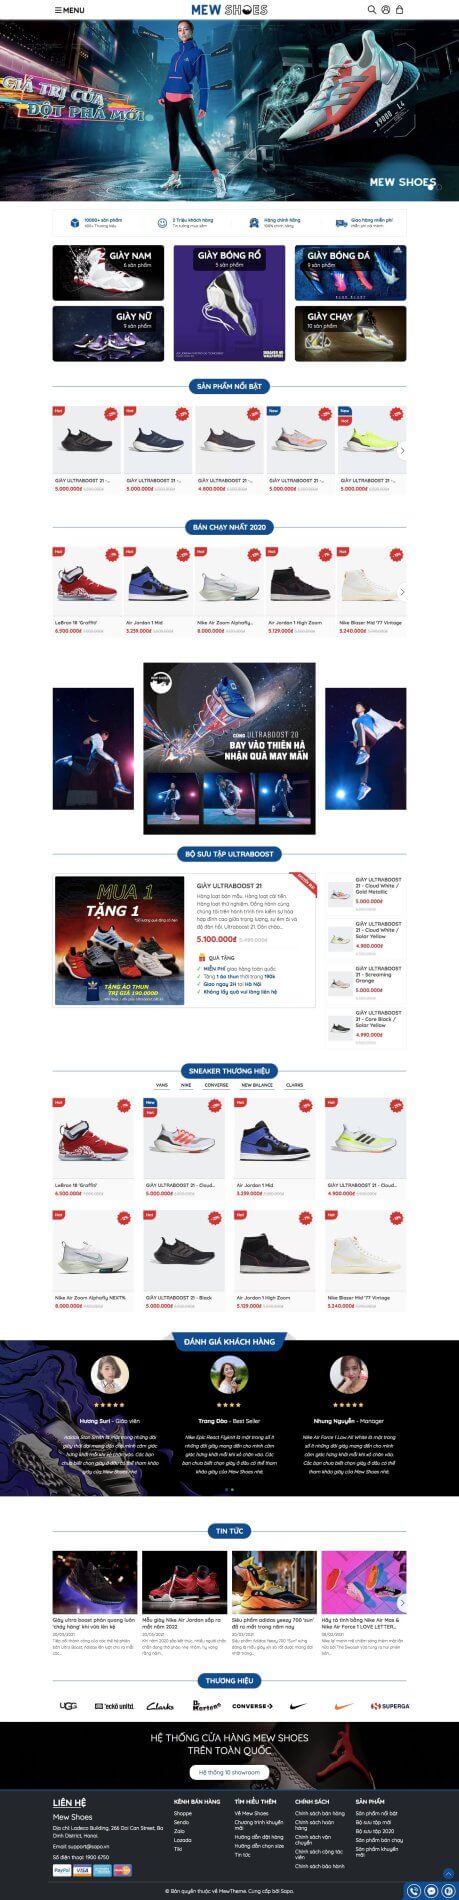 Giao diện website bán hàng giày dép thể thao Mew Shoes 7